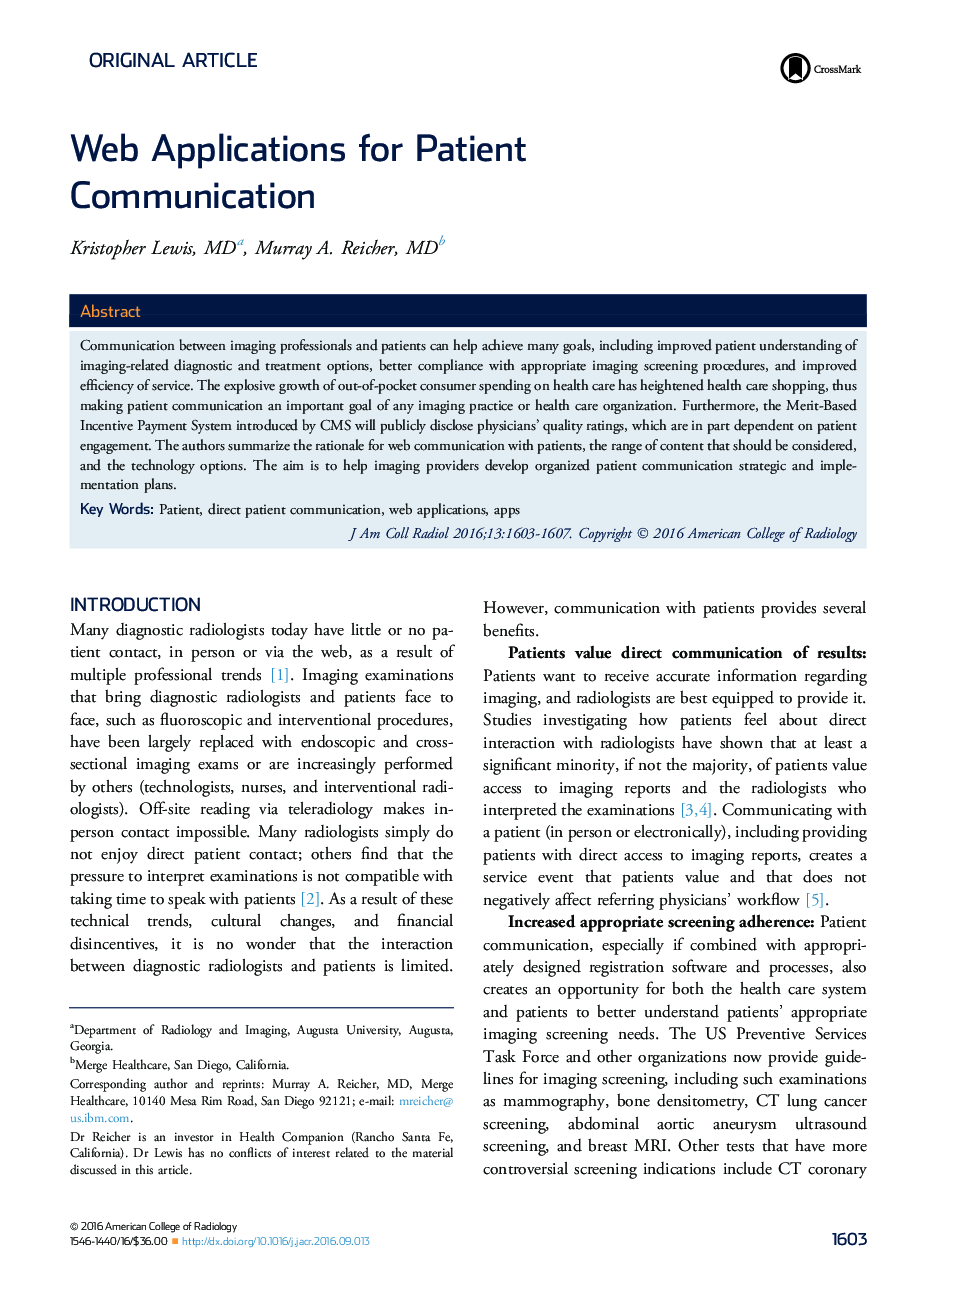 مقاله اصلی برنامه های کاربردی برای ارتباطات بیمار 